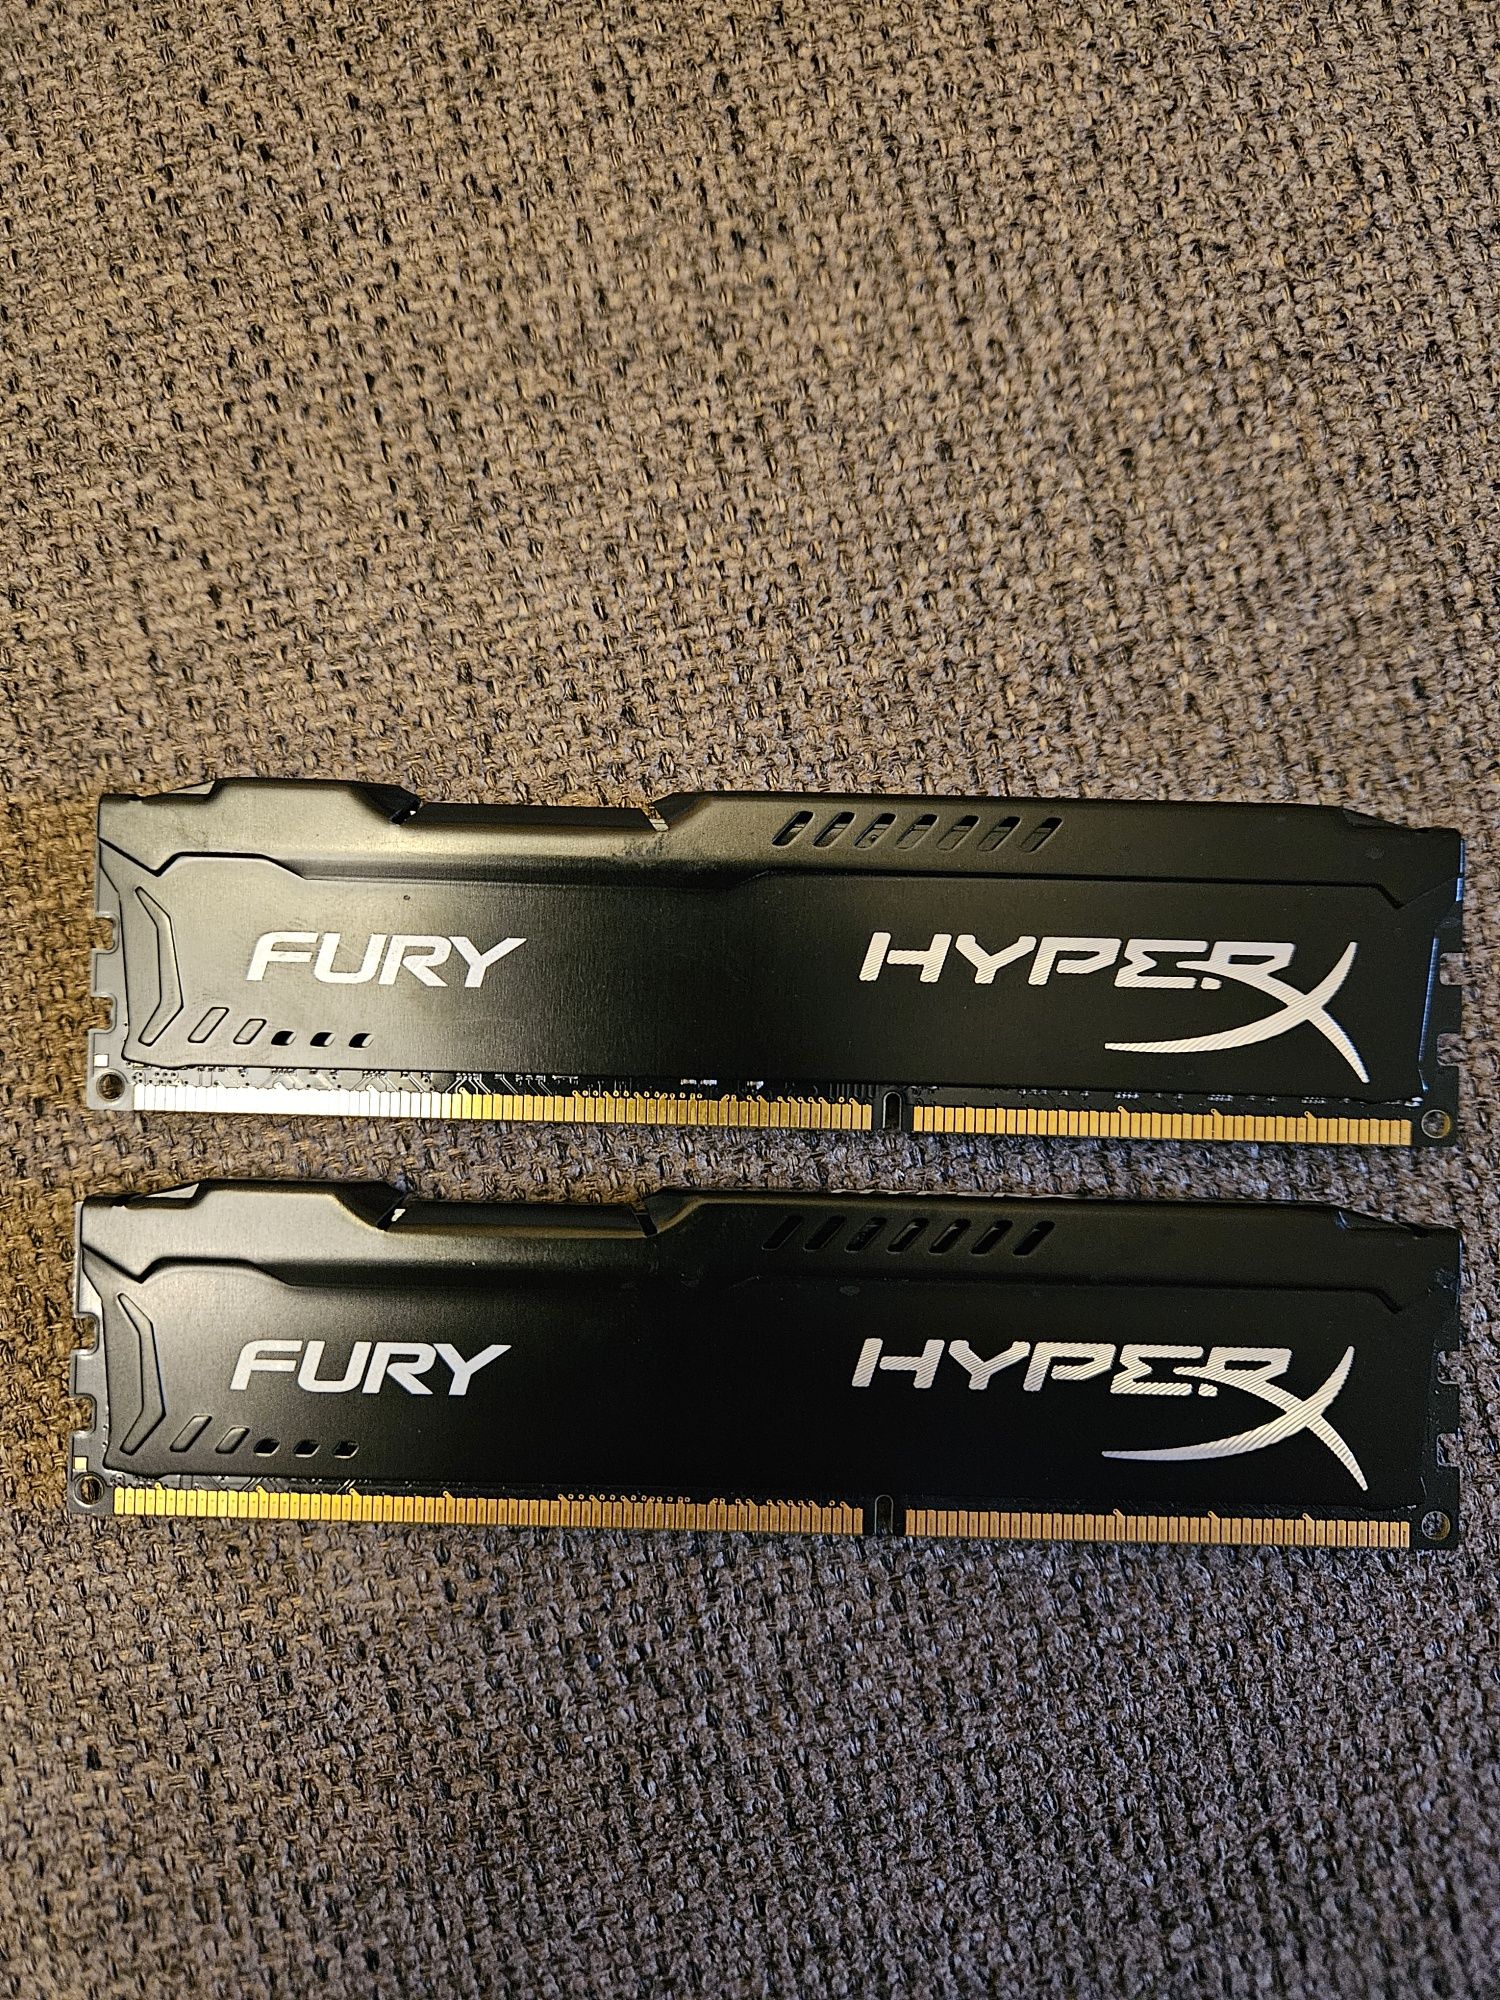 Fury Hyper X 2x8GB